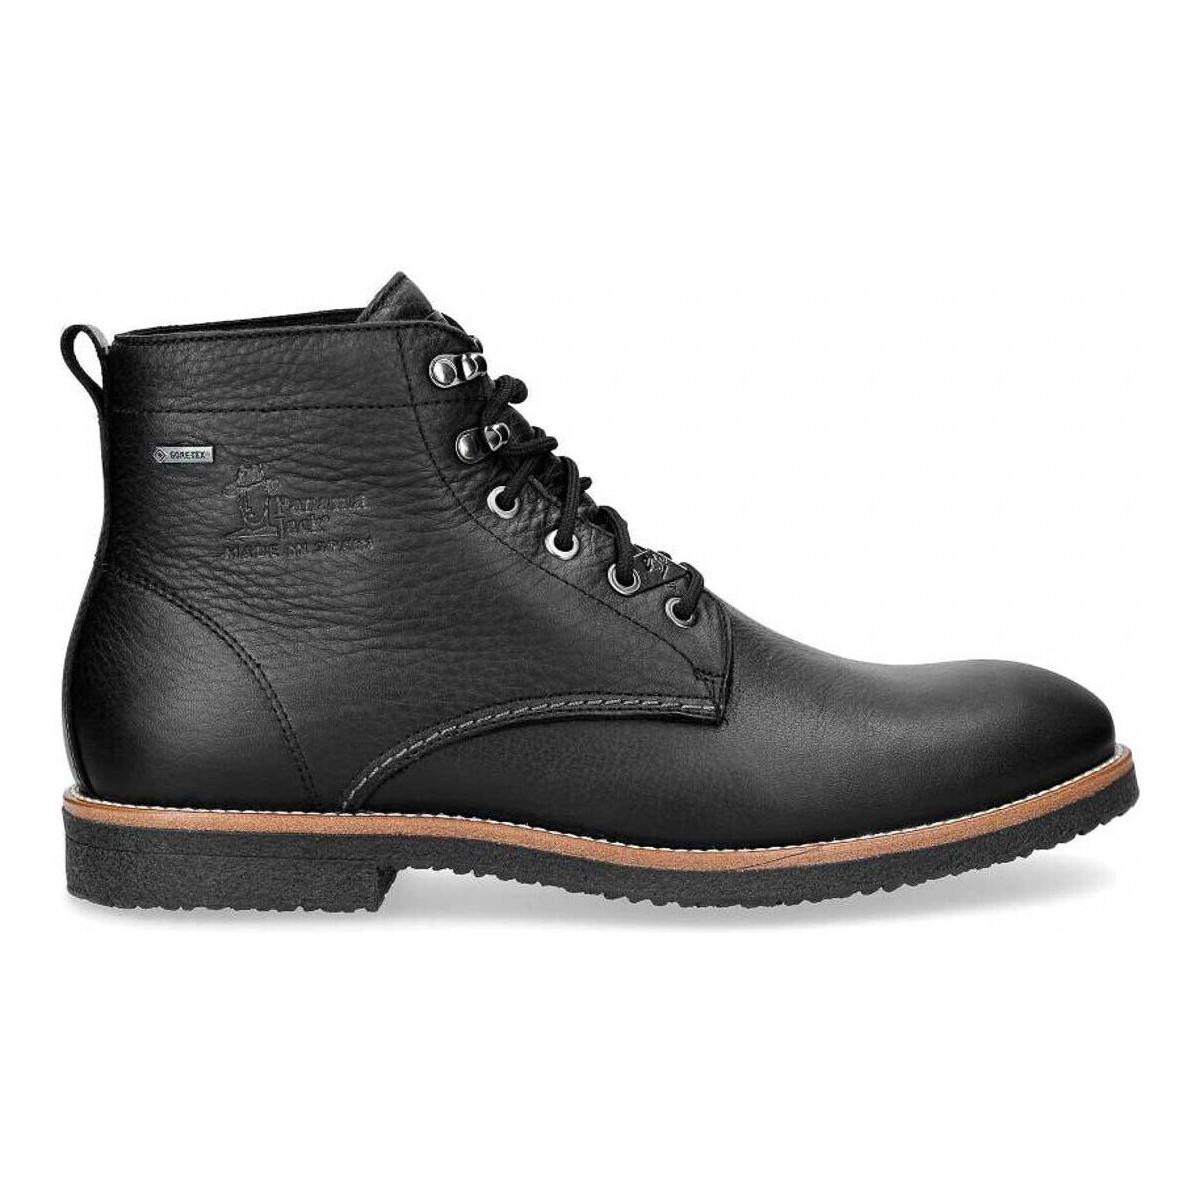 Chaussures Homme Boots Panama Jack GLASGOW GTX C3 Noir